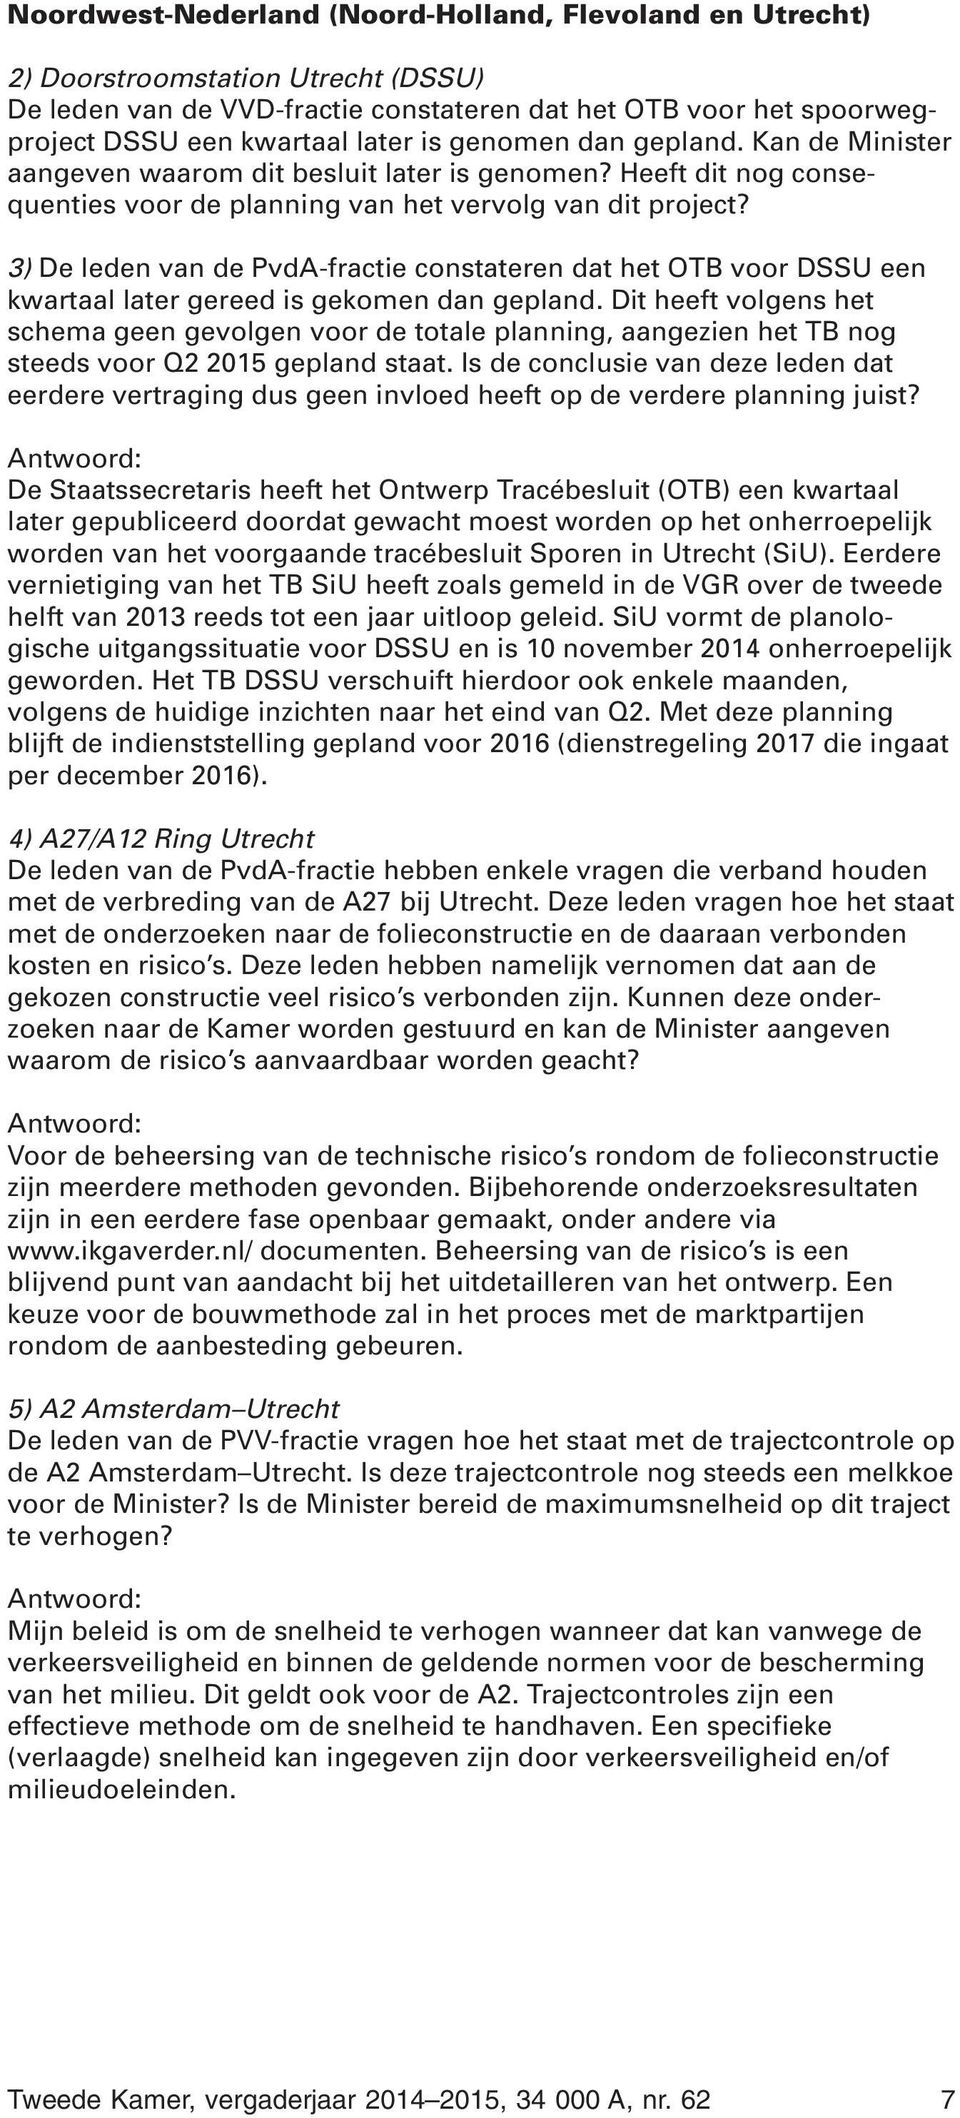 3) De leden van de PvdA-fractie constateren dat het OTB voor DSSU een kwartaal later gereed is gekomen dan gepland.